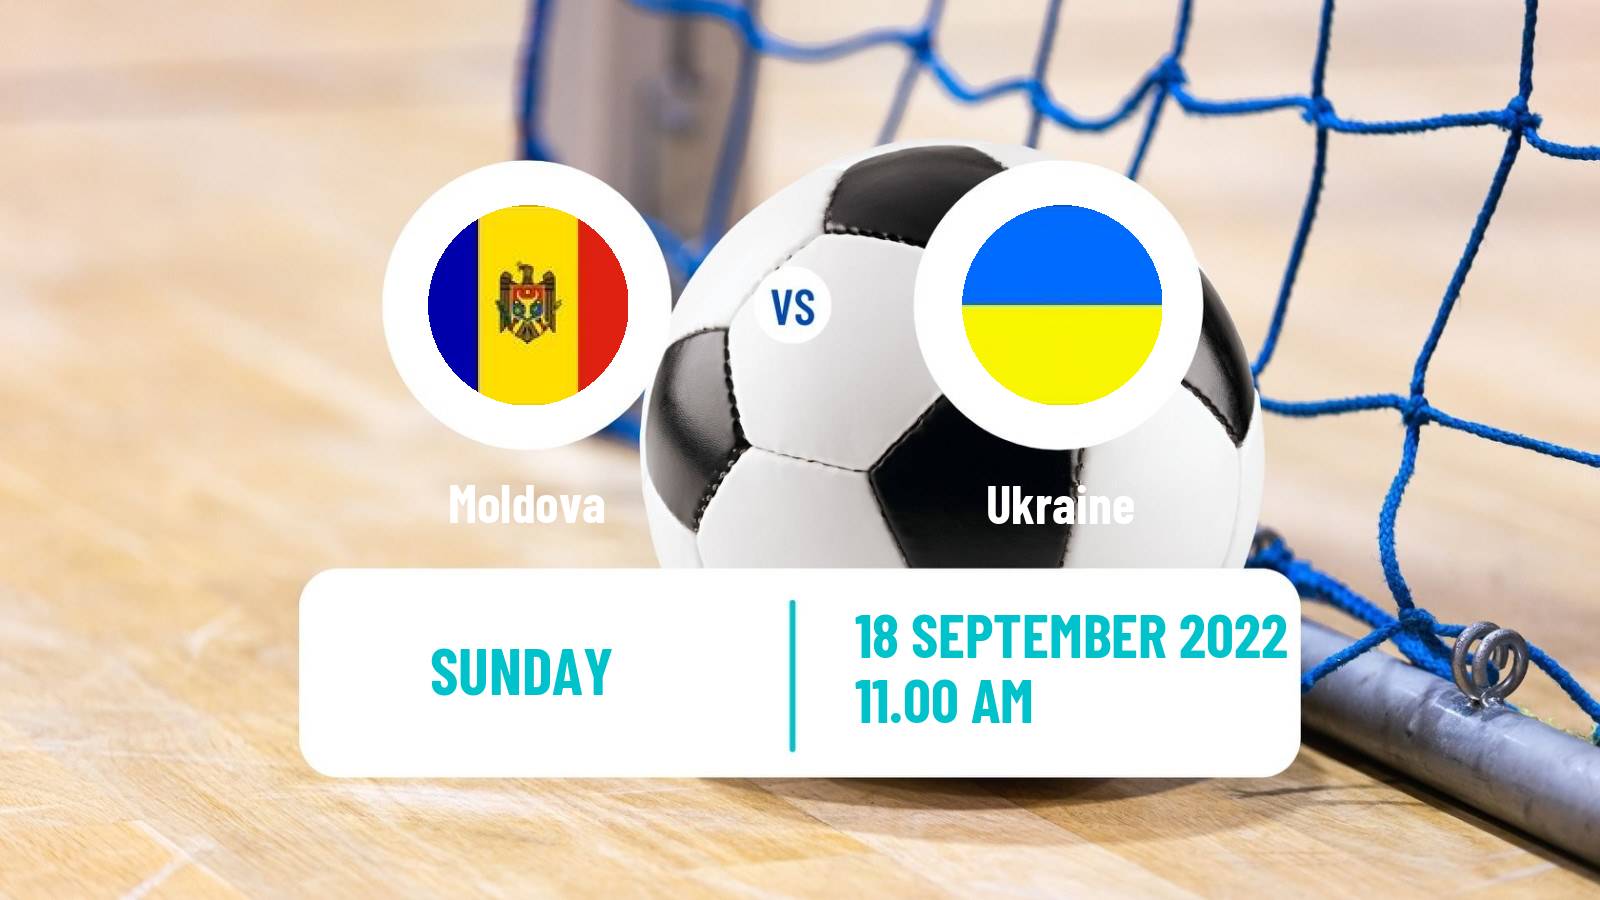 Futsal Friendly International Futsal Moldova - Ukraine